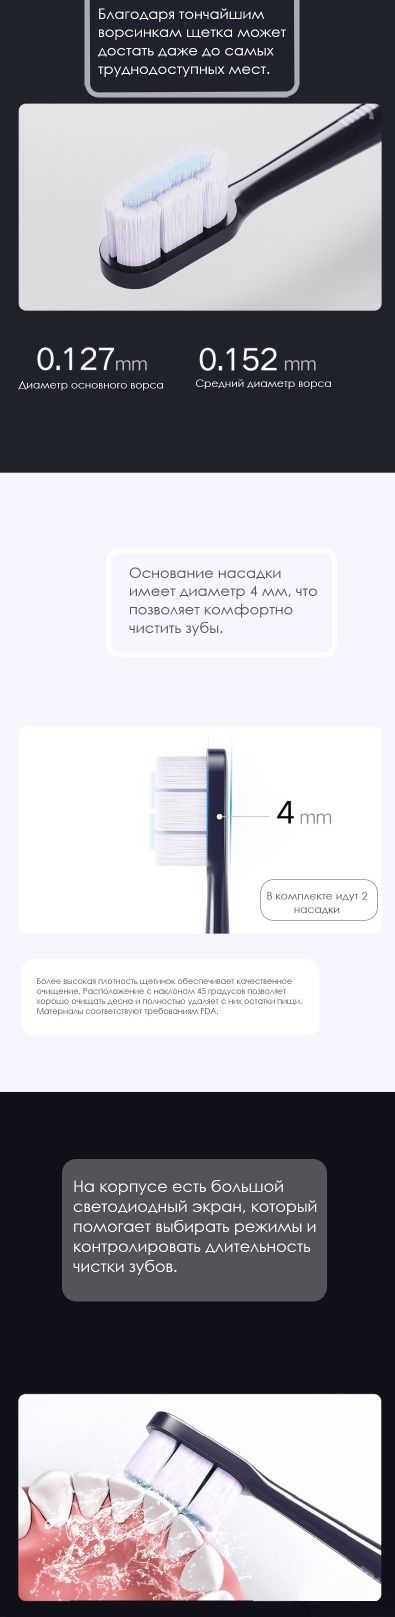 Электрическая зубная щетка Xiaomi Mijia T700